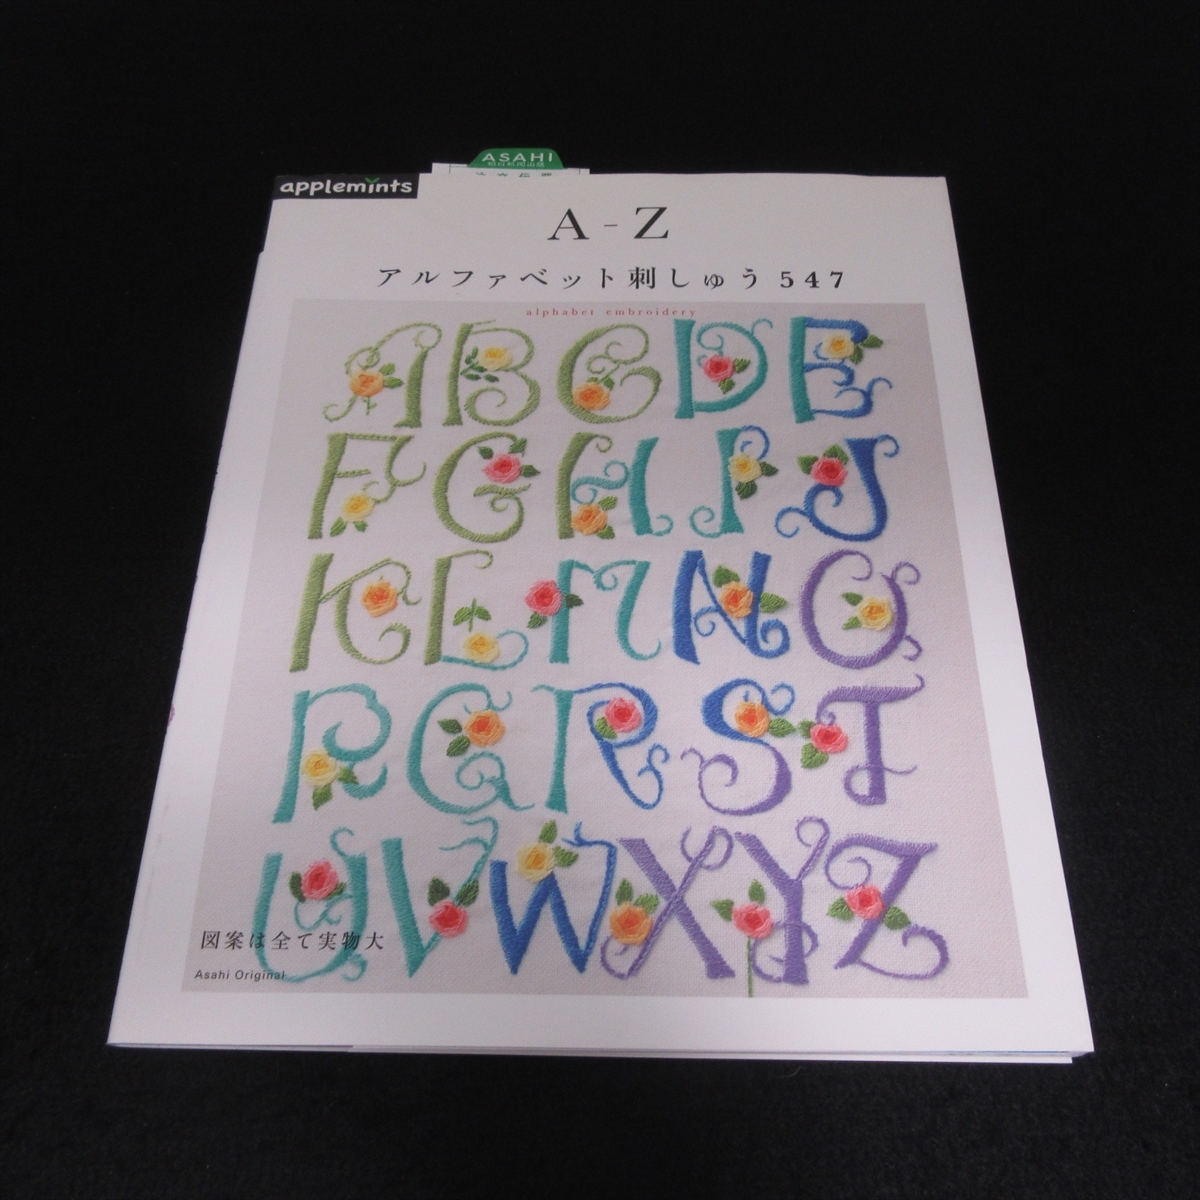 本 『A-Z アルファベット 刺しゅう 547』 ■送120円 アサヒオリジナル アップルミンツ 刺繍○の画像1